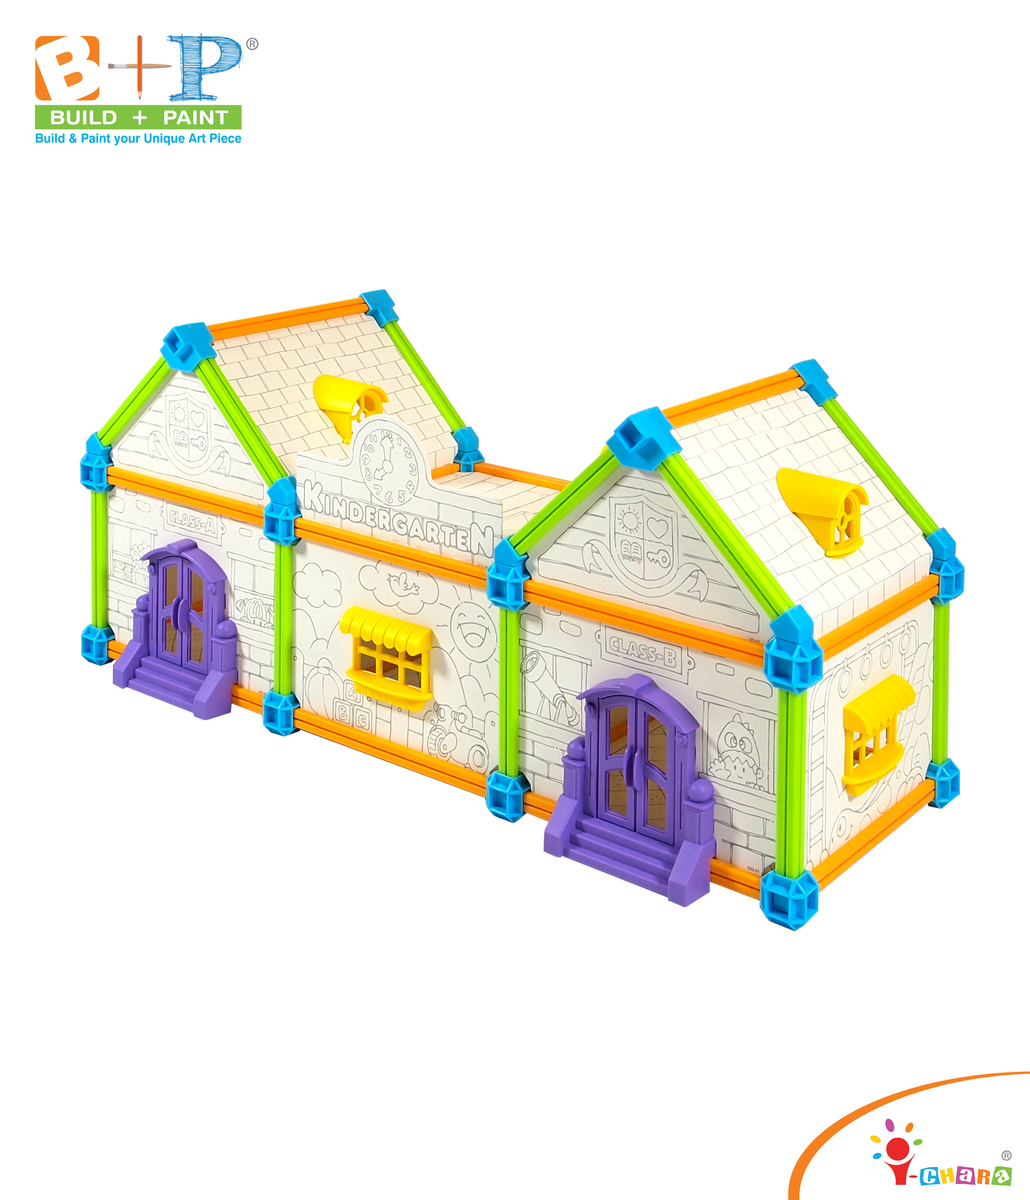 小小藝術建築師 - 快樂幼兒園 親子玩具 兒童益智玩具 幼兒教育玩具 建築模型 填色畫畫 STEAM STEM  科學教育玩具 